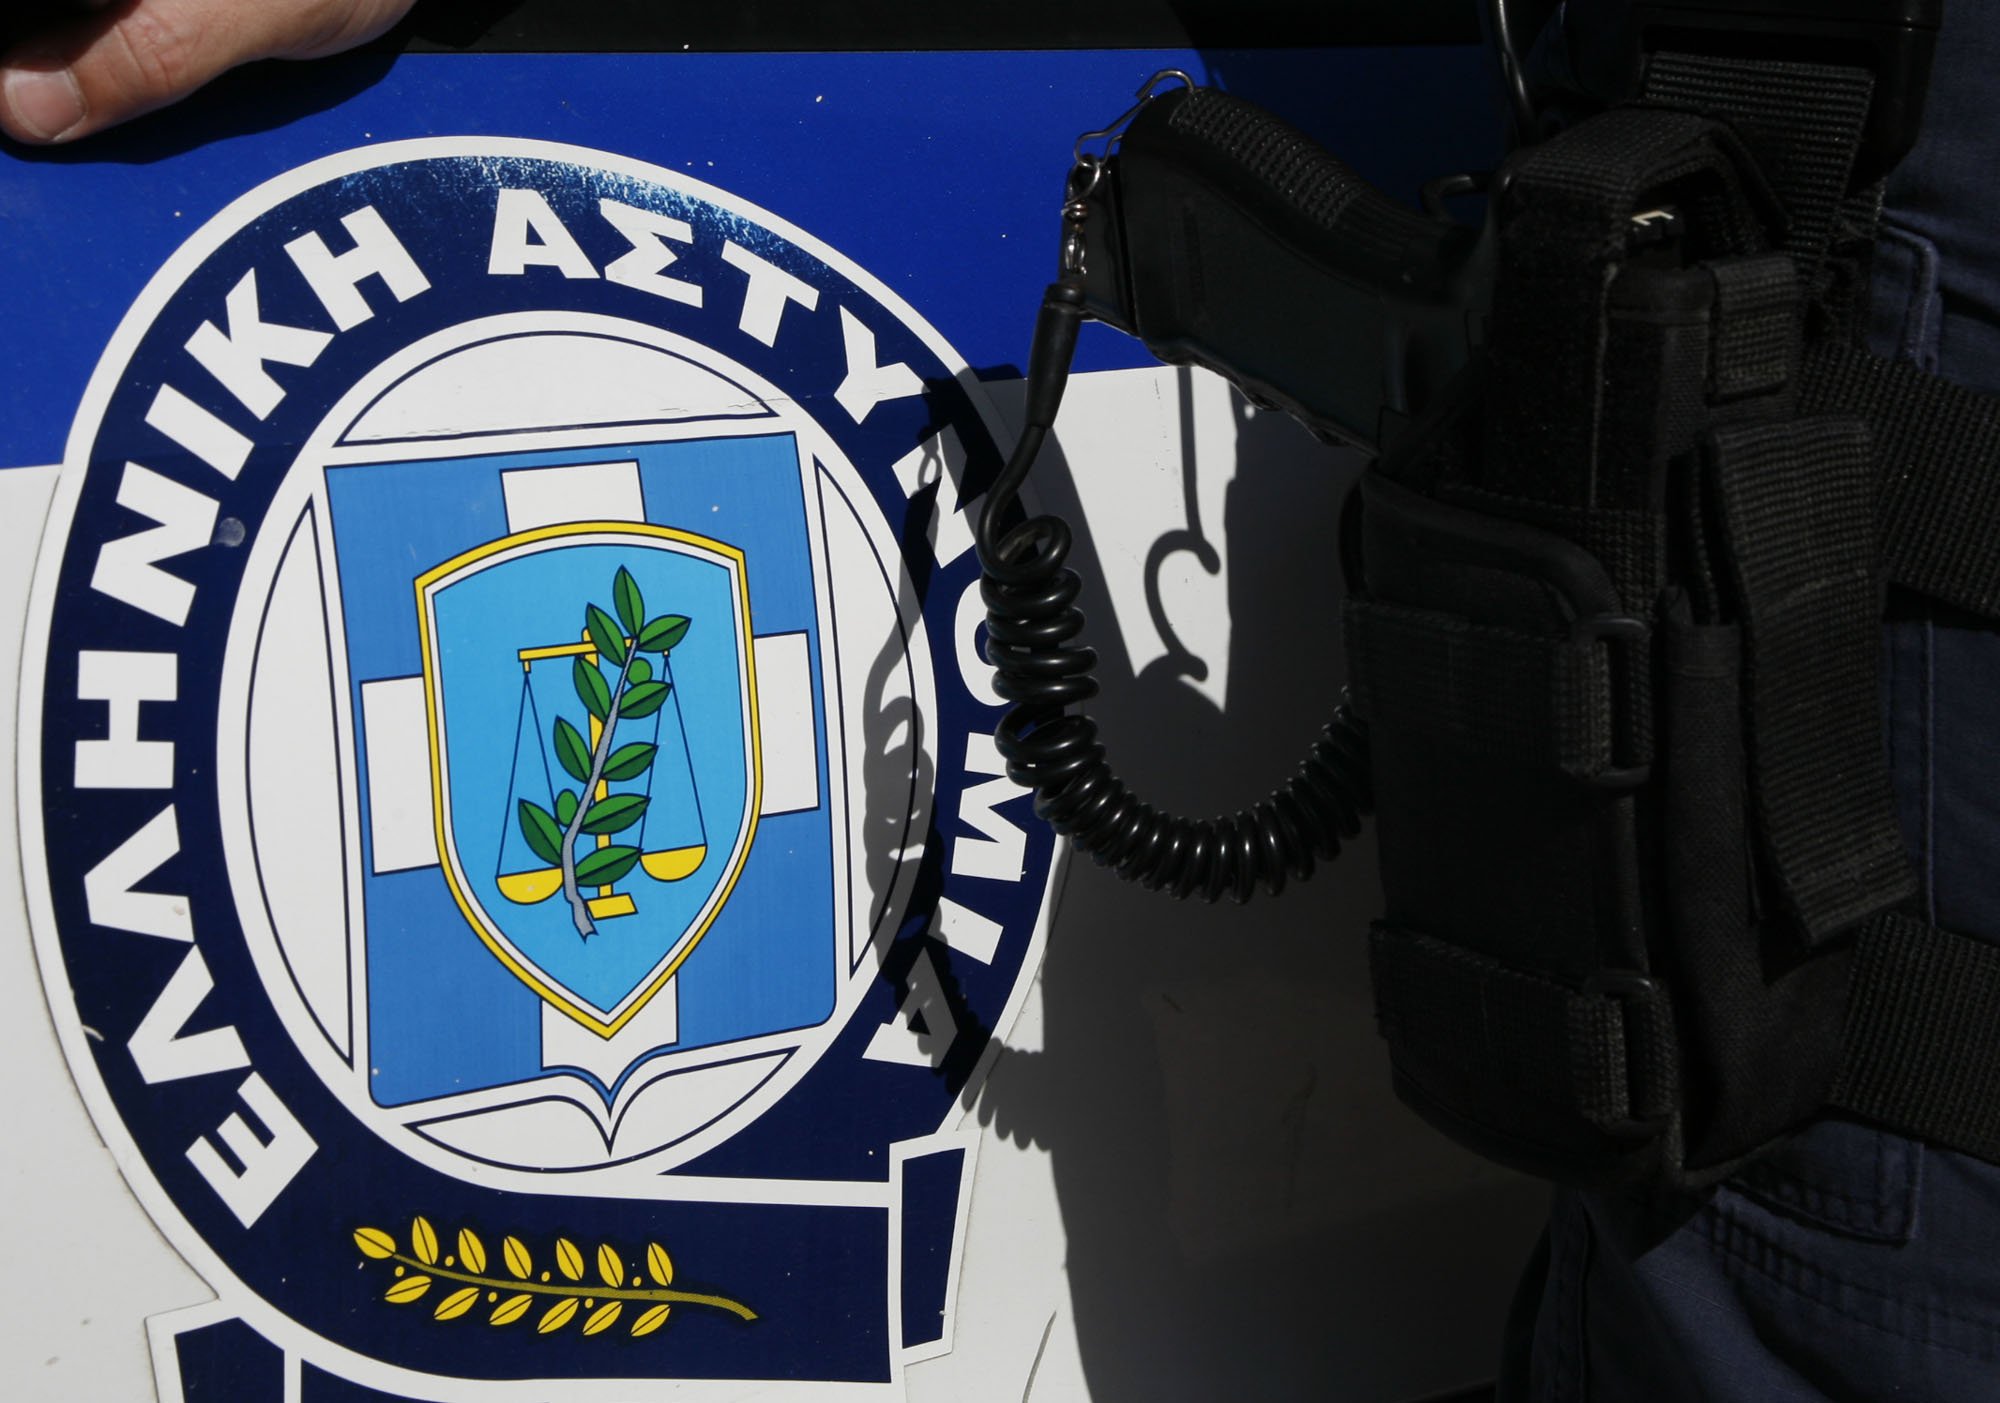 Η Ελληνική αστυνομία έβγαλε... διαφημιστικό σποτάκι (VIDEO)